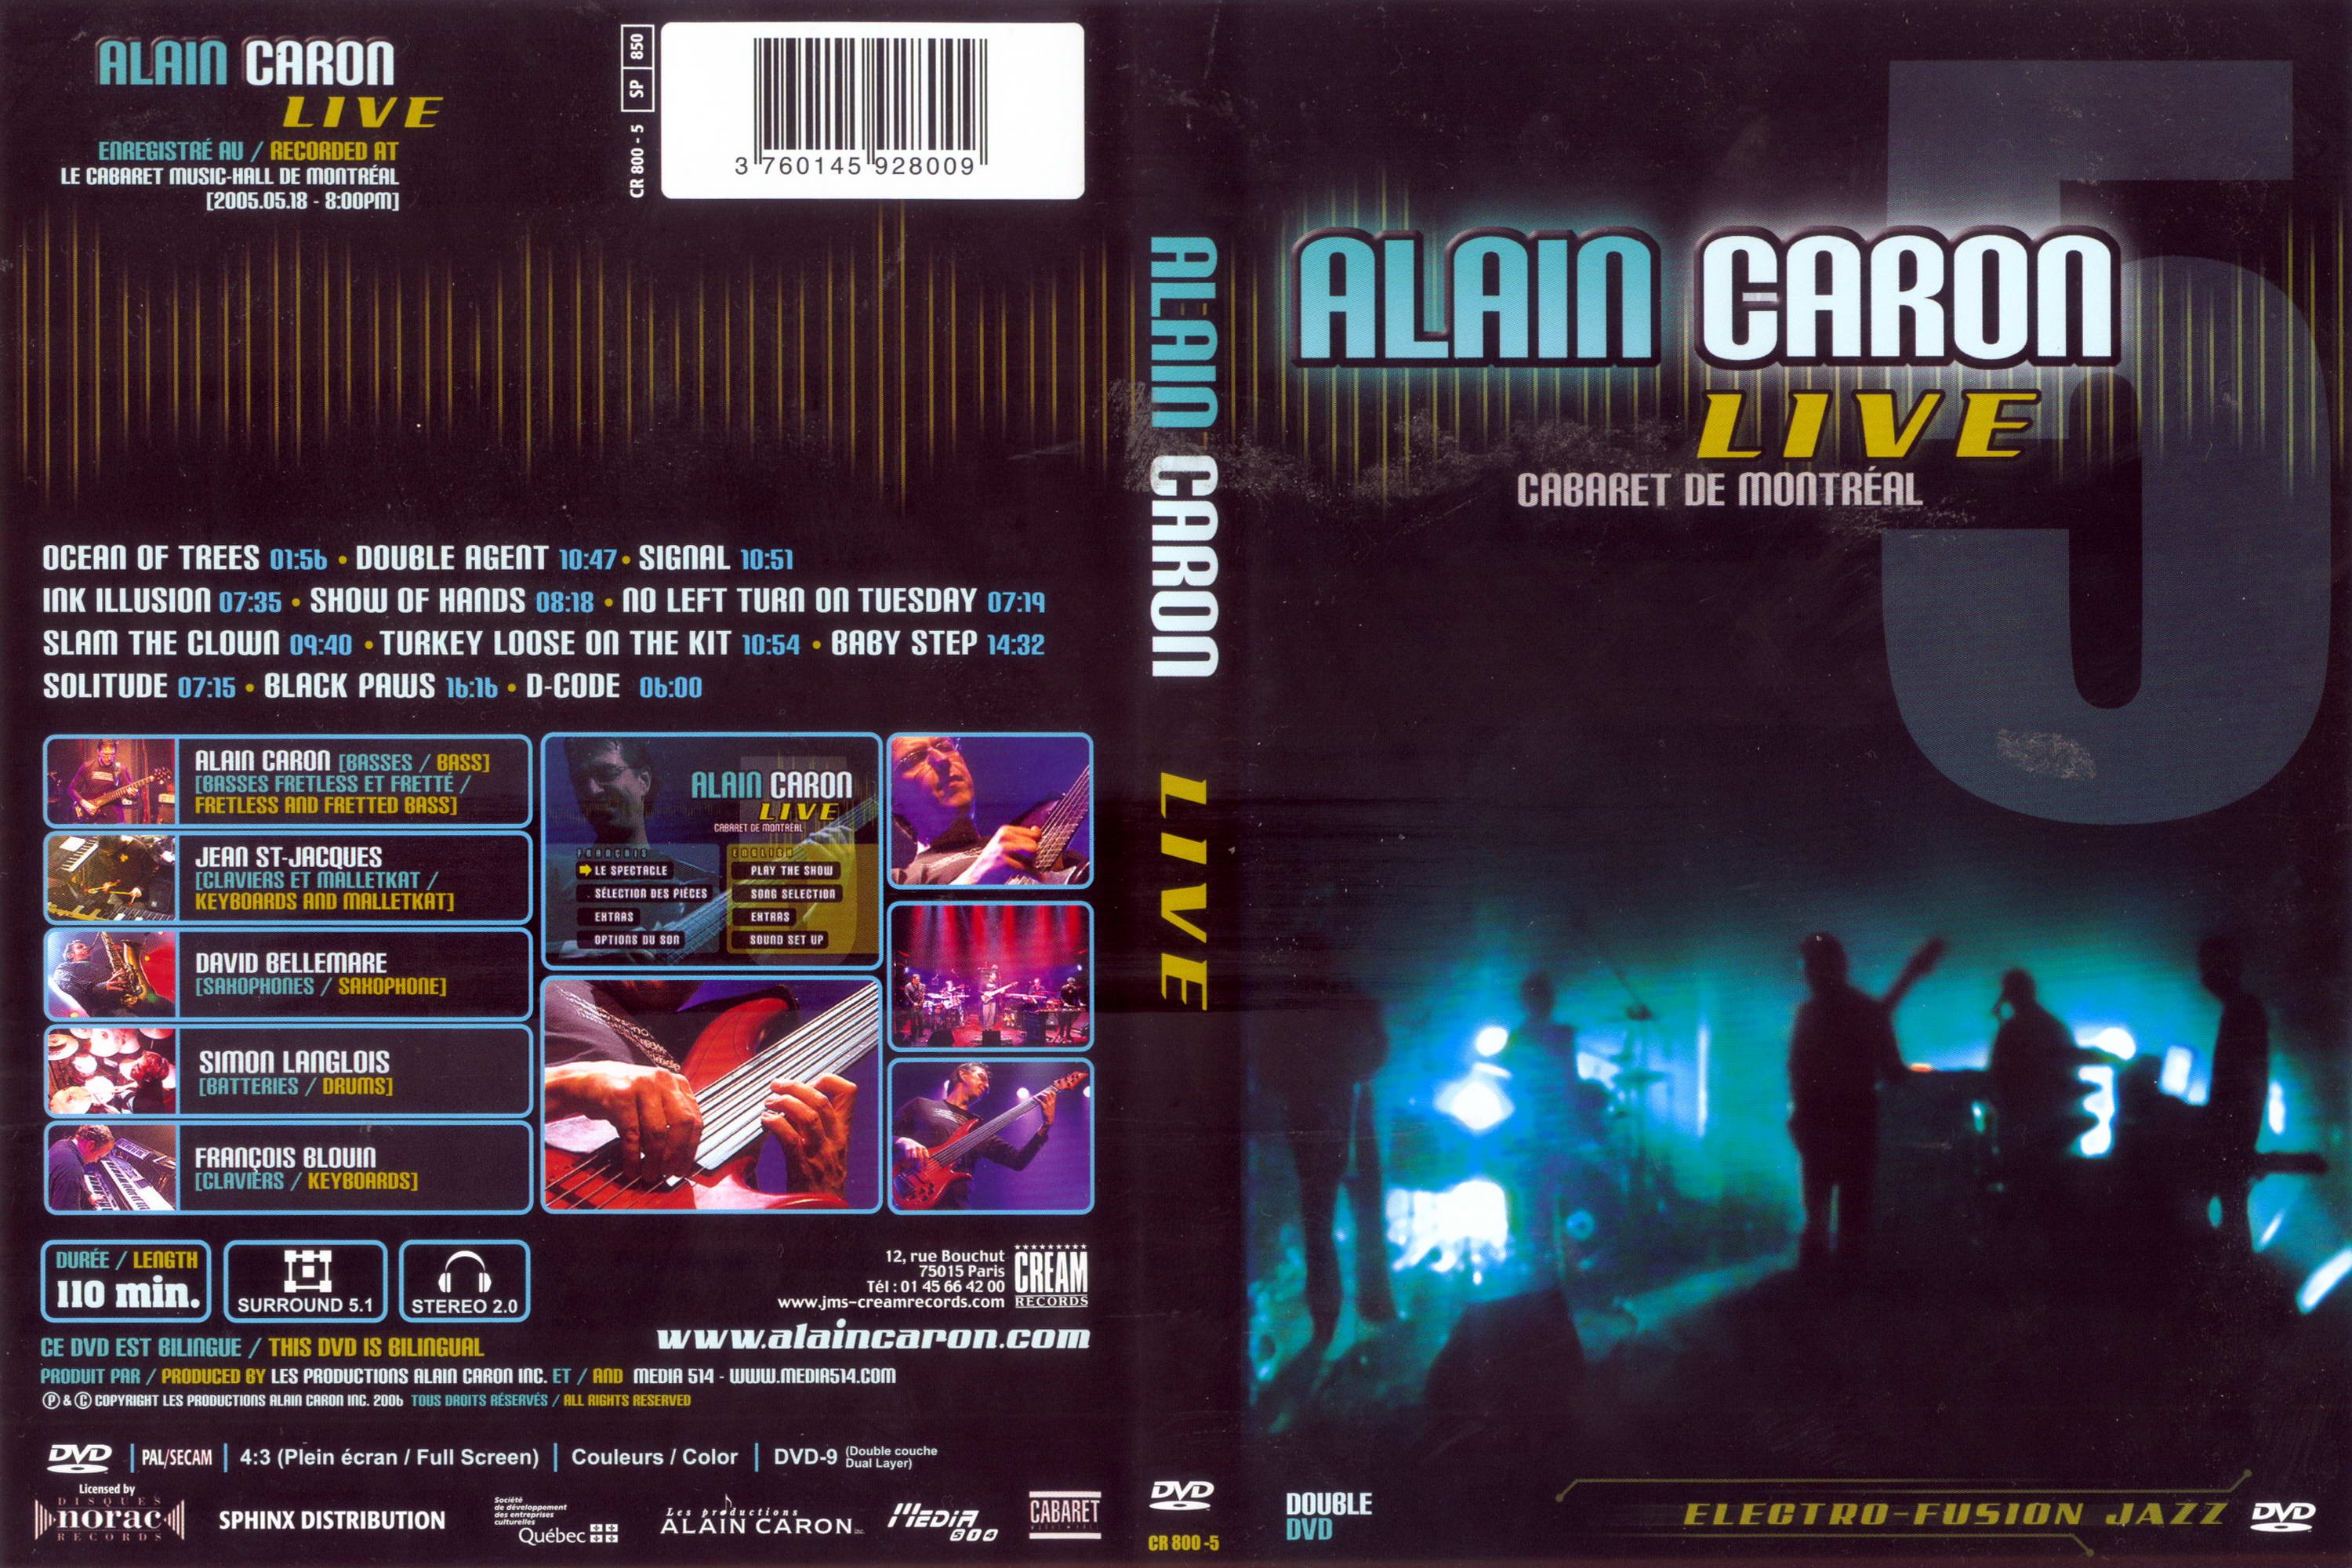 Jaquette DVD Alain Caron LIVE (Canadienne)